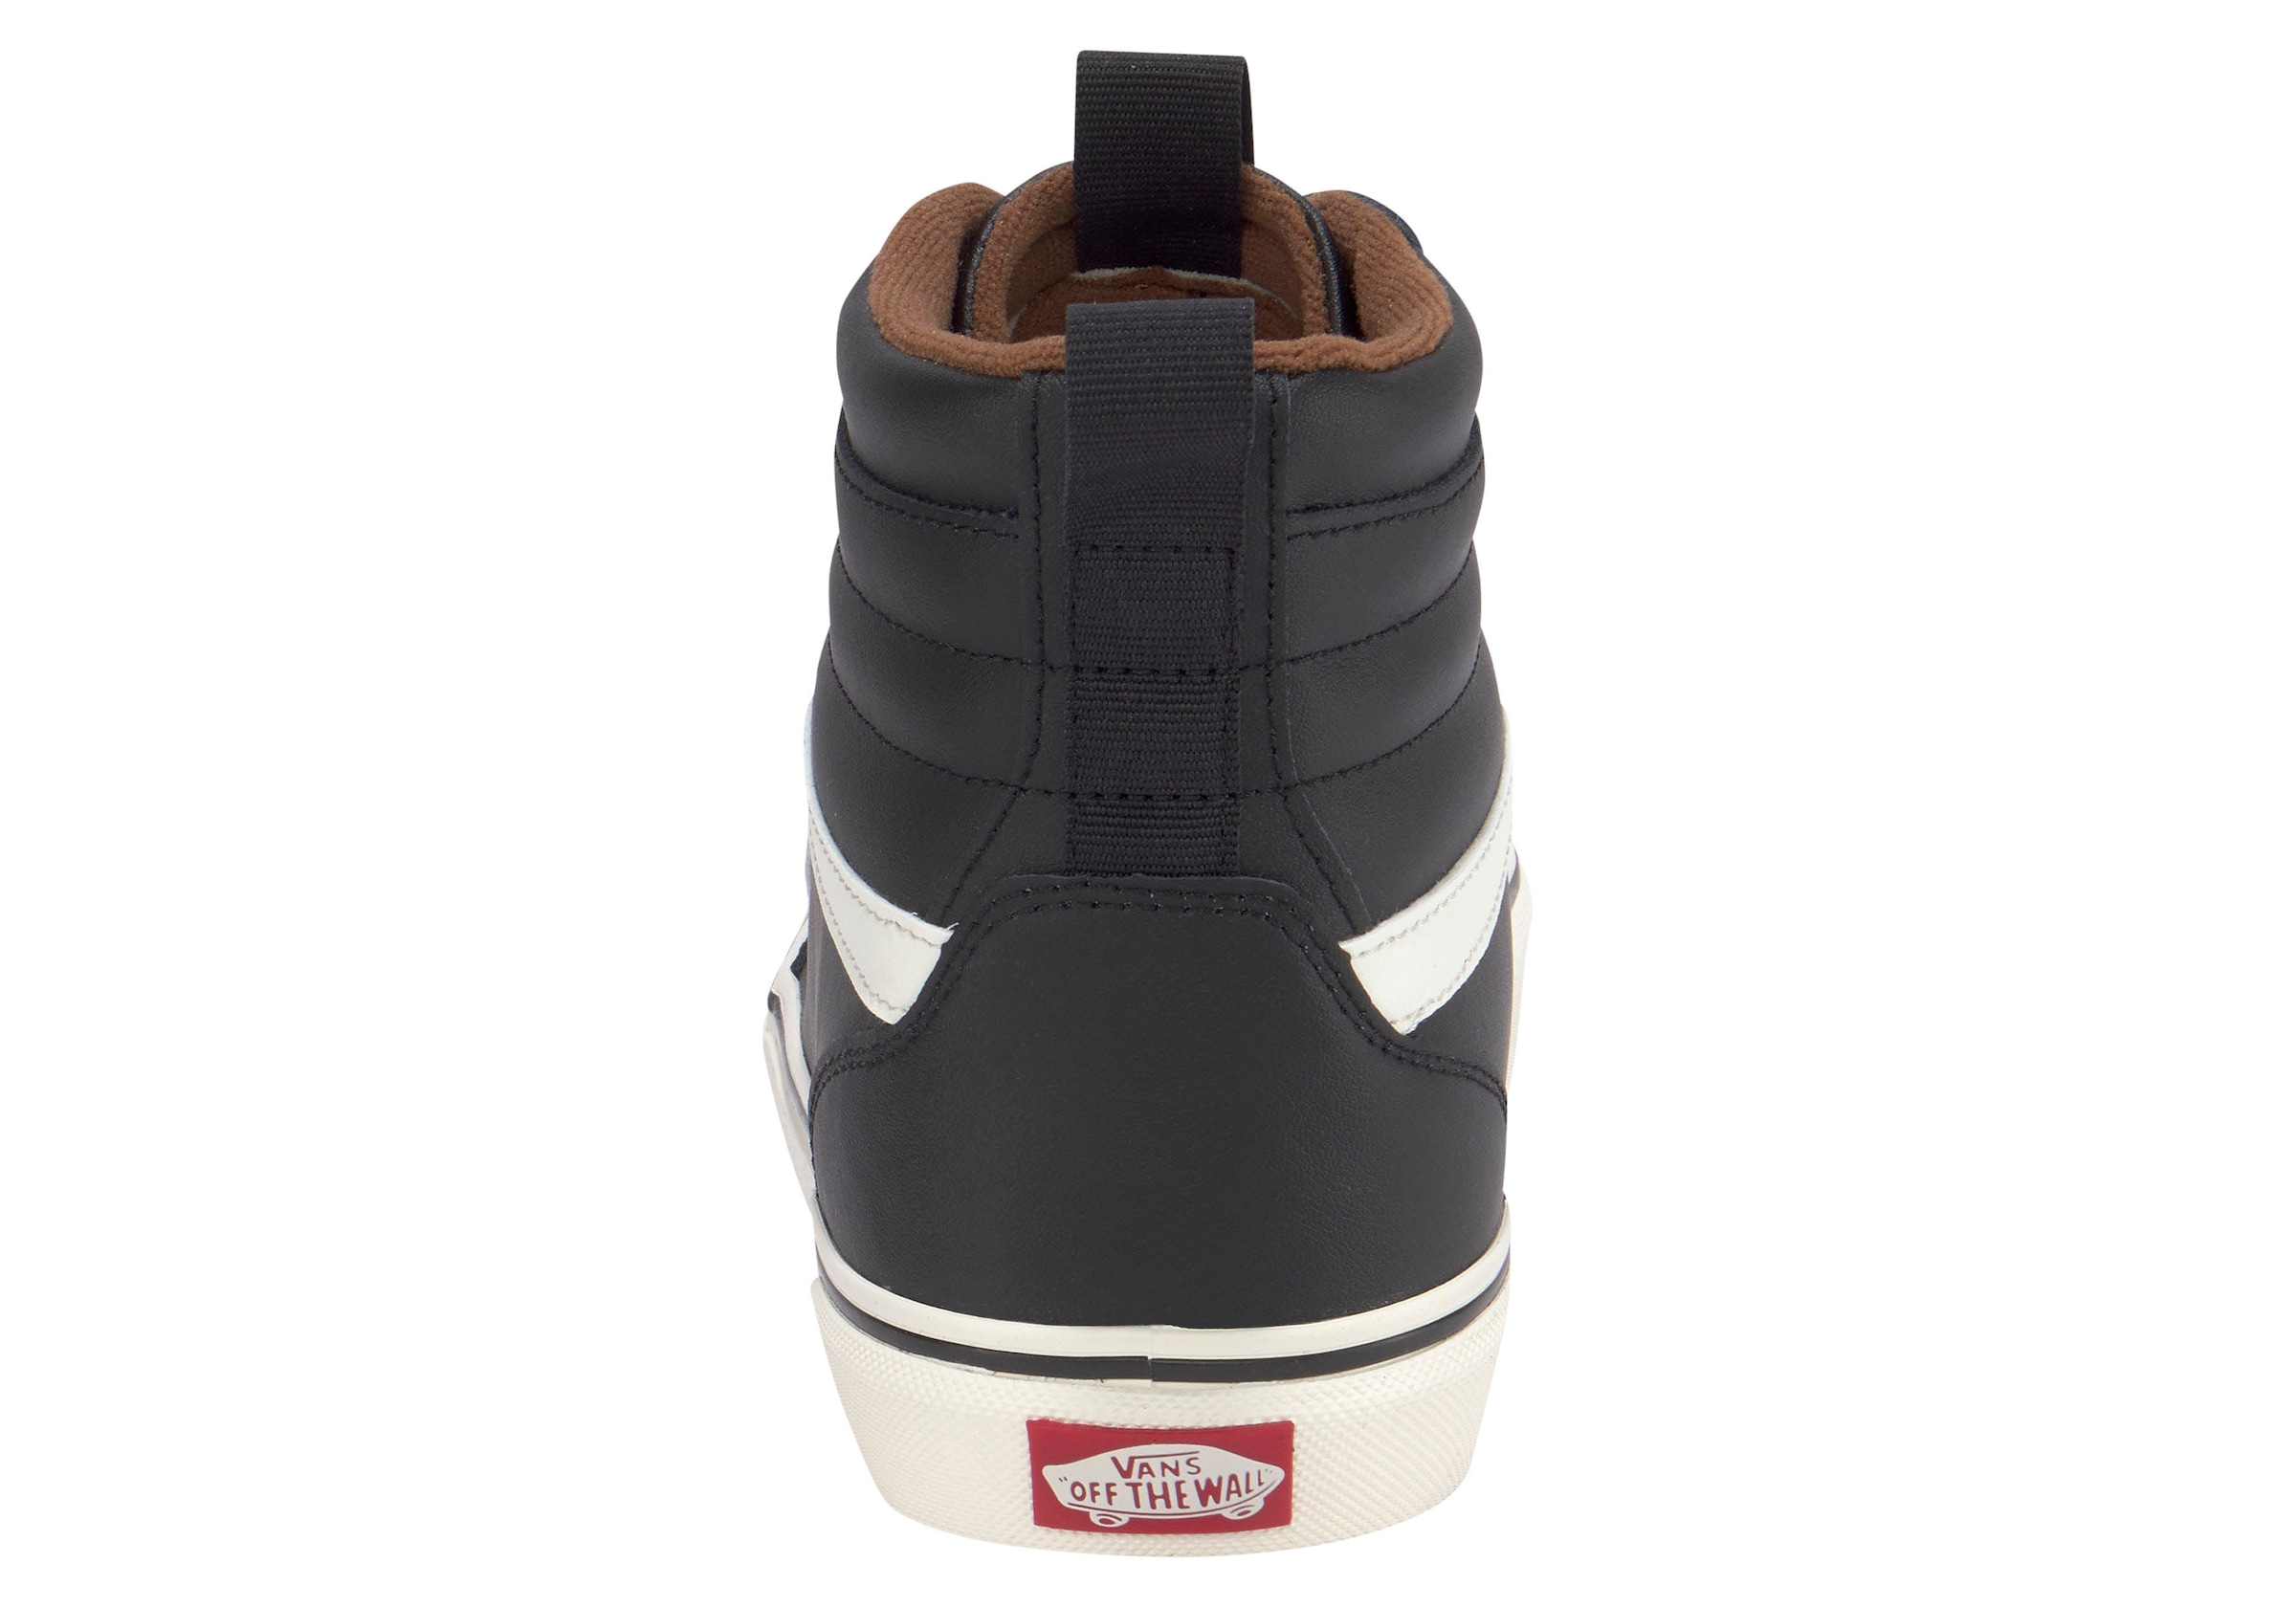 Vans Sneaker »Filmore Hi VansGuard«, mit kontrastfarbenem Logobadge an der Ferse